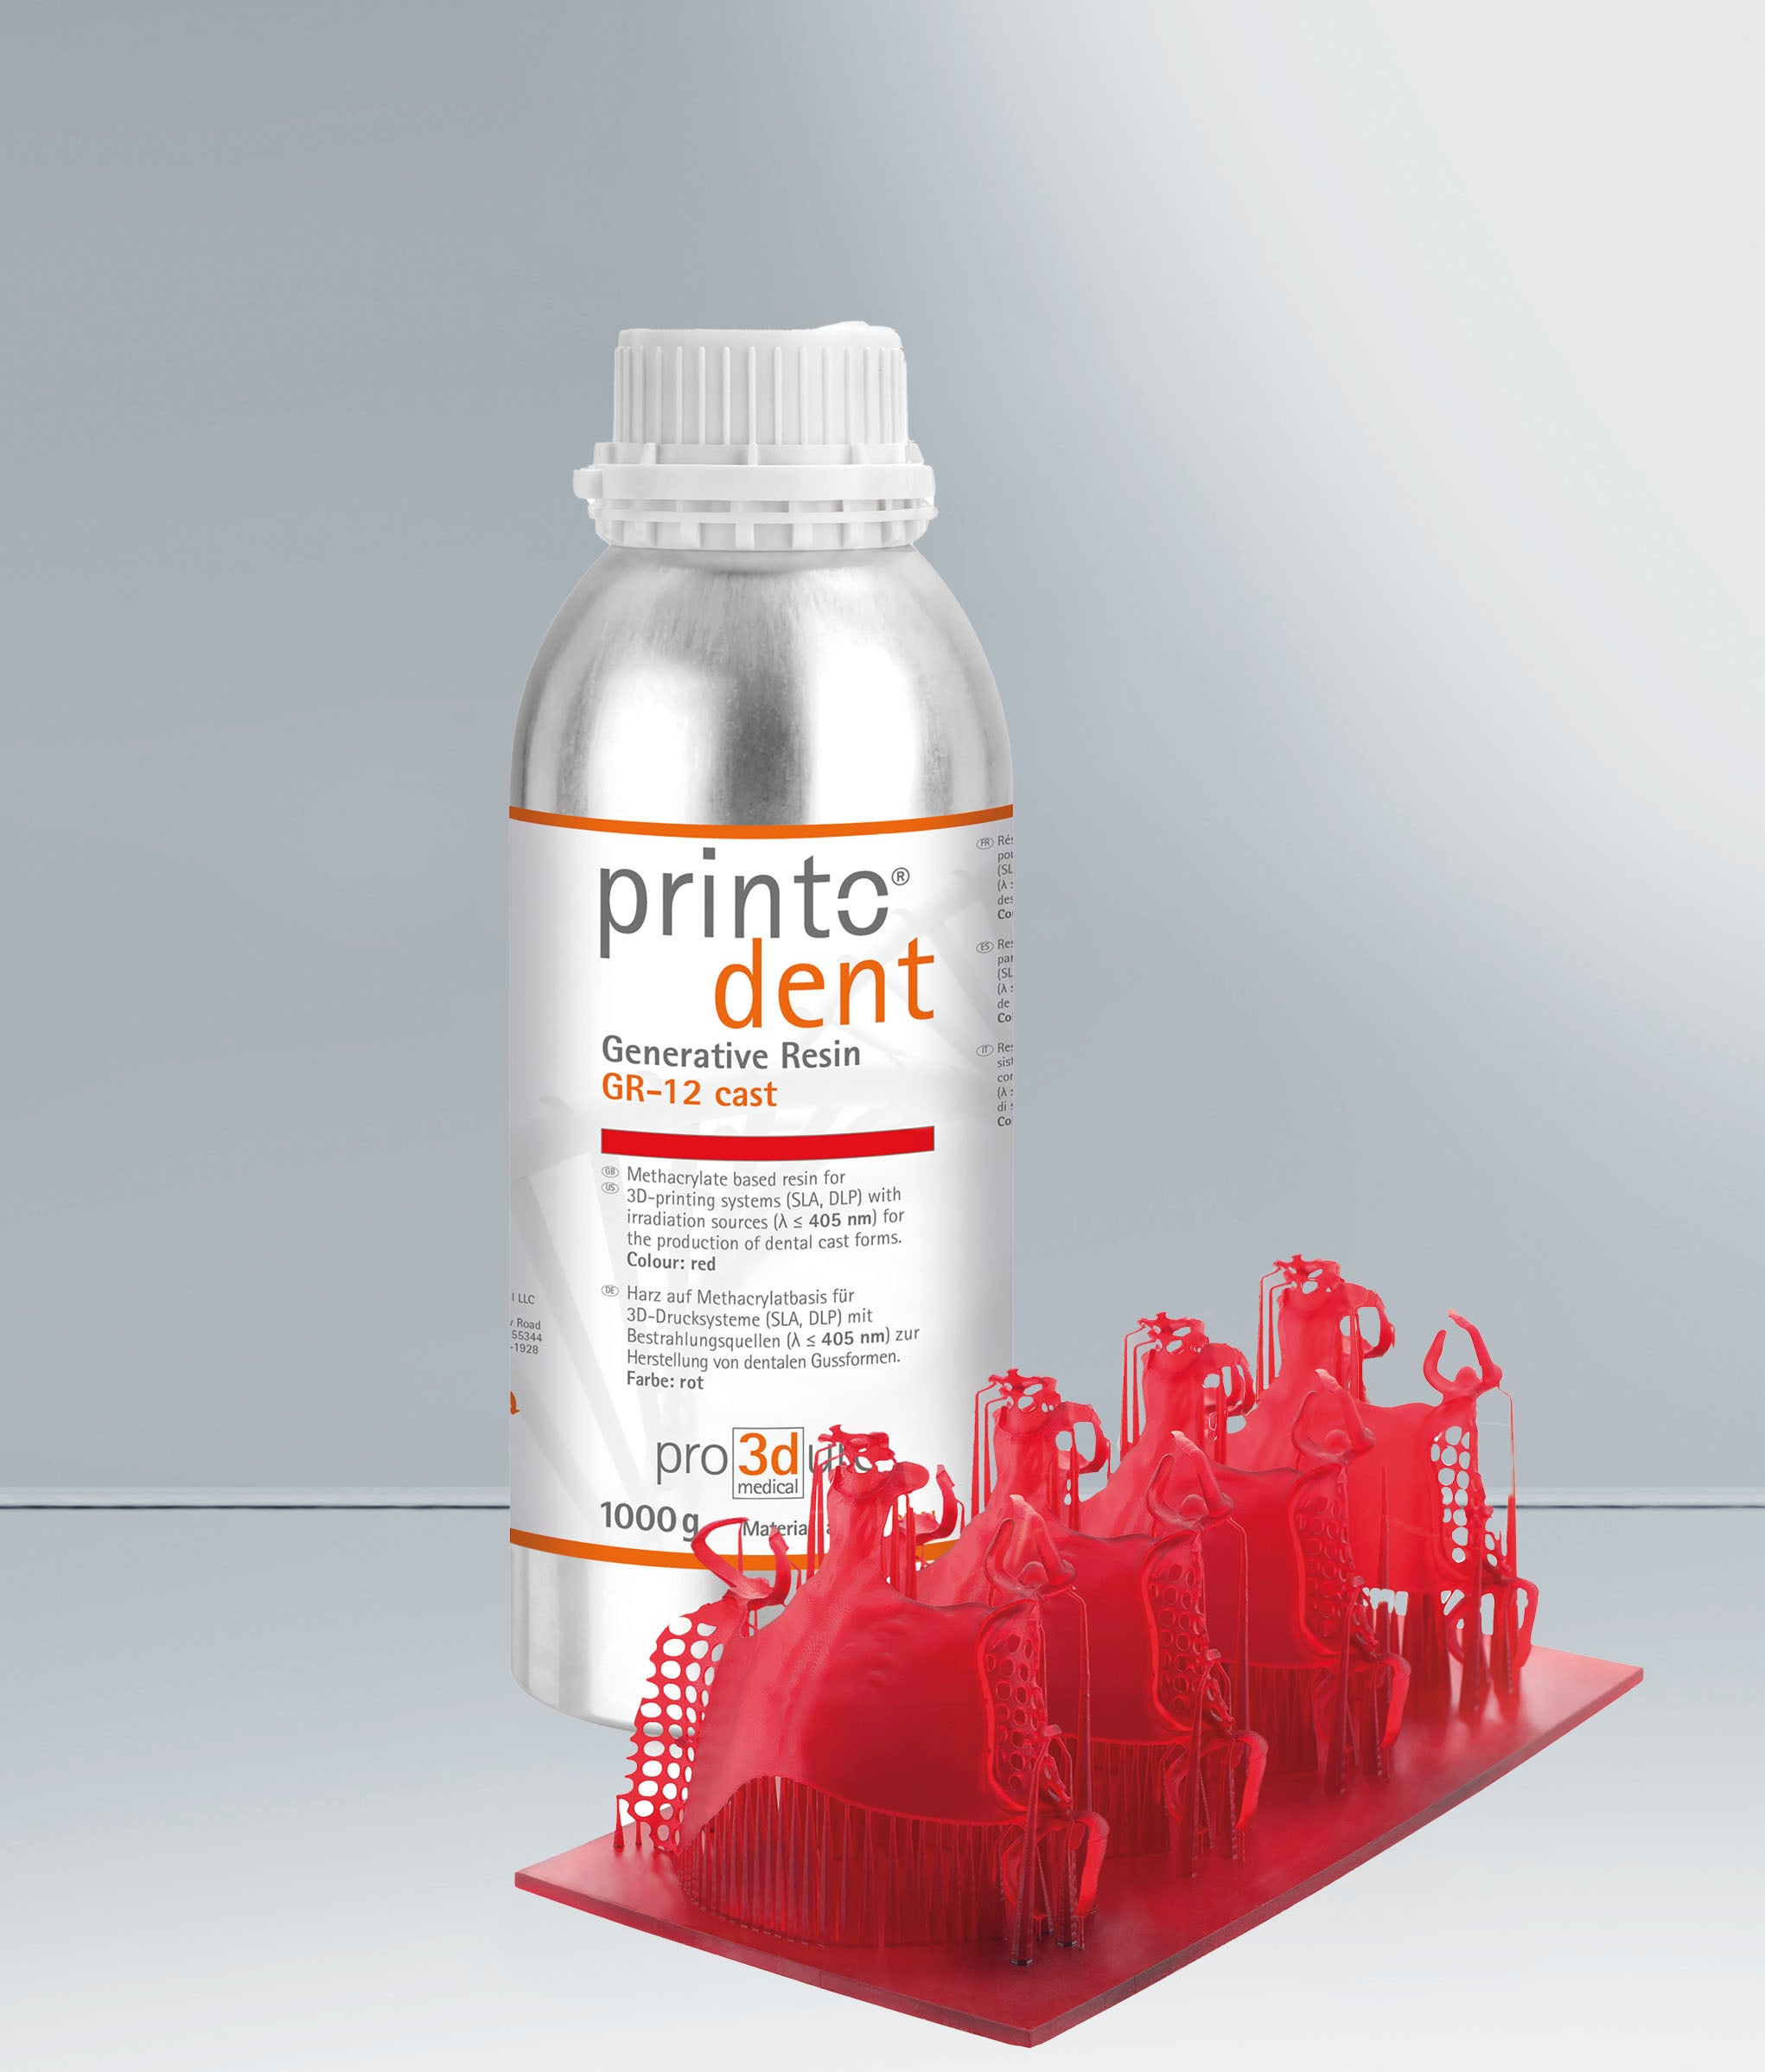 Pro3dure Printodent® GR-12 cast